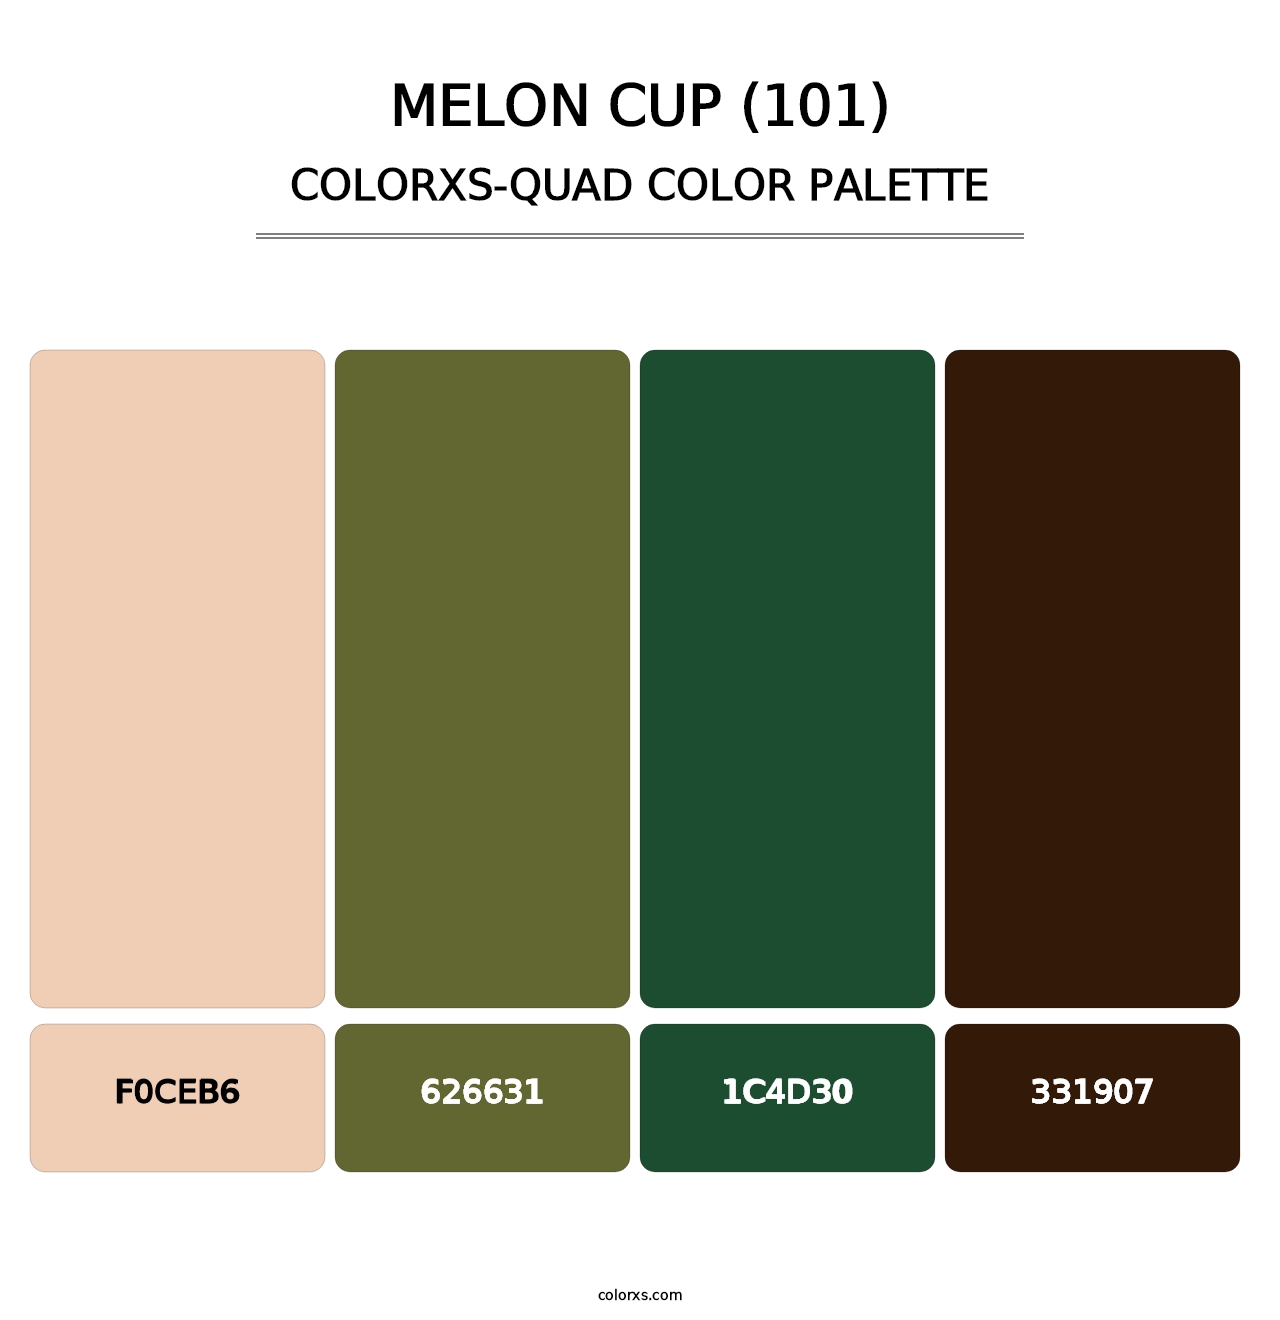 Melon Cup (101) - Colorxs Quad Palette